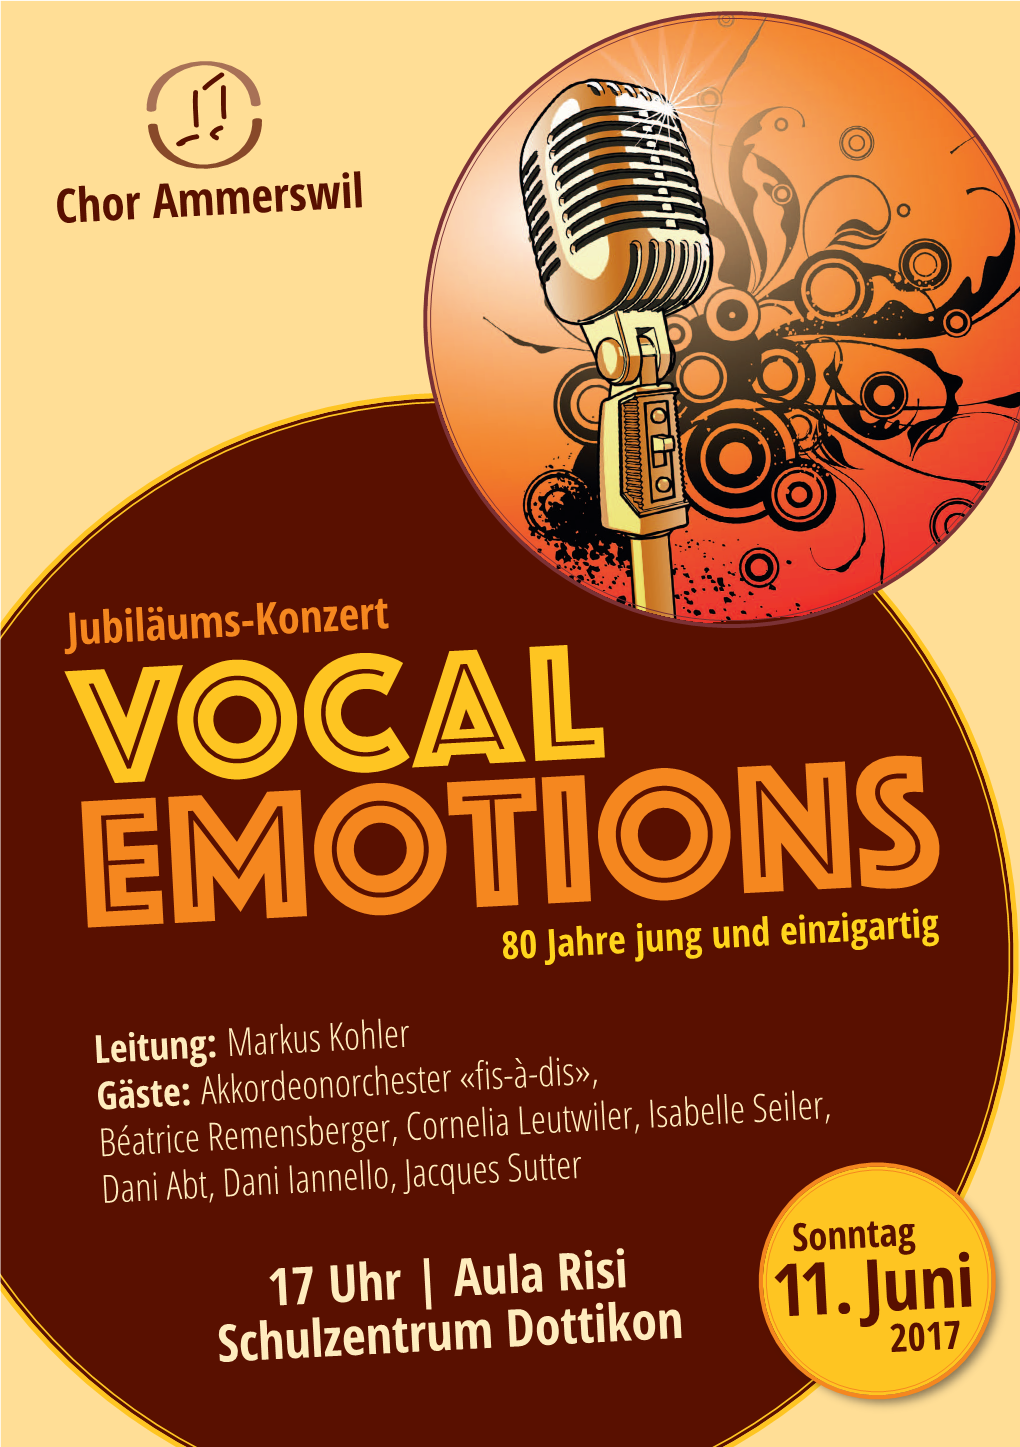 11. Juni Schulzentrum Dottikon 2017 Konzert Aus Unserem «Vocal Emotions» Konzert- Liebe Freunde Vom Chor Ammerswil Programm